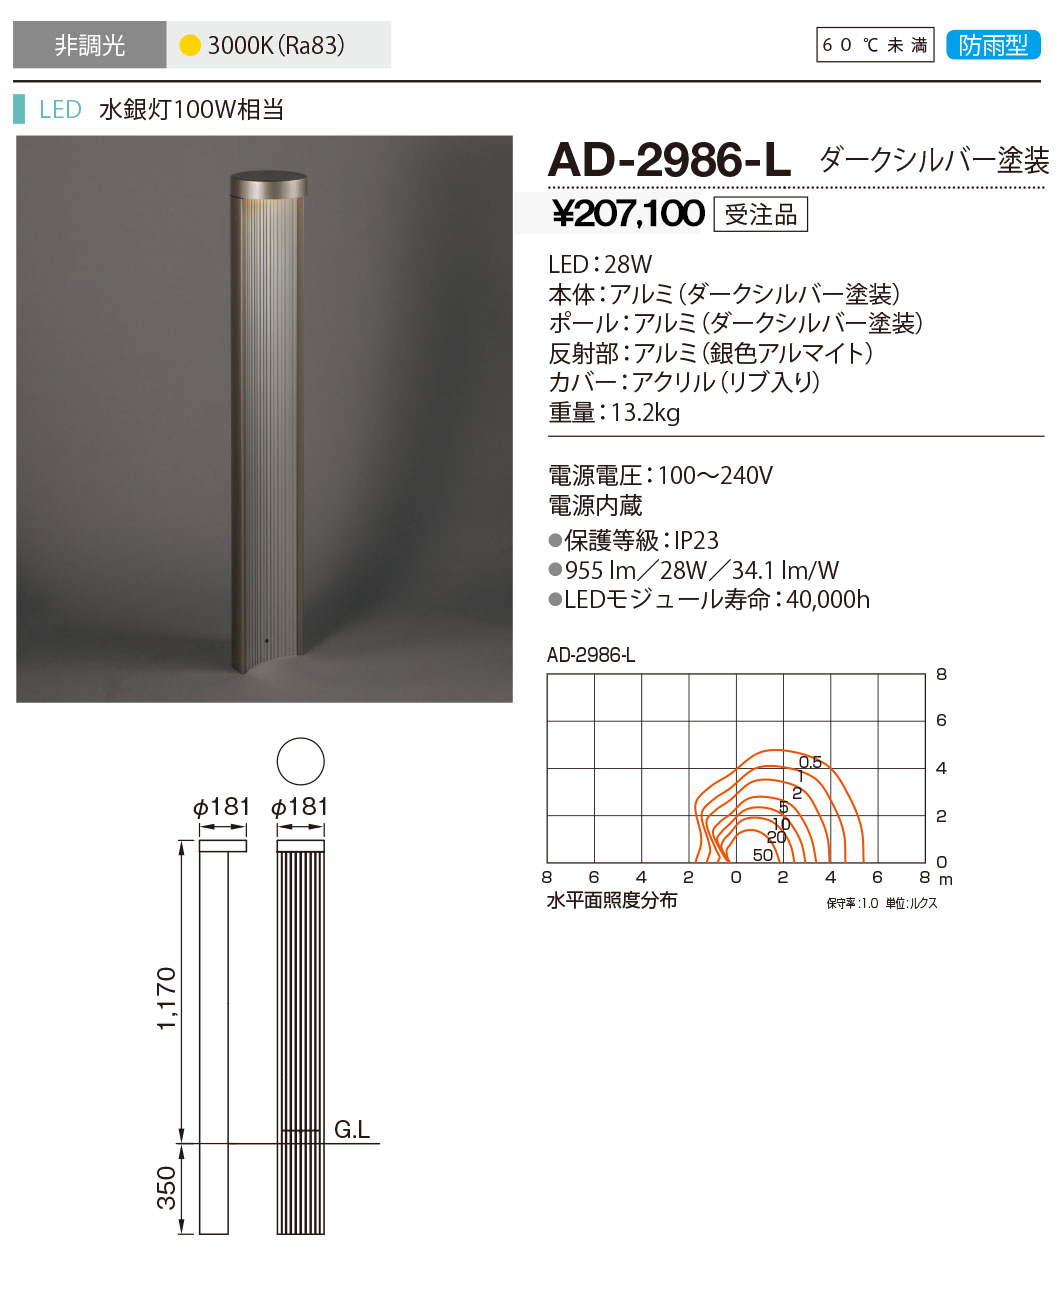 AD-2606-L 山田照明 ガーデンライト ダークシルバー LED - 2